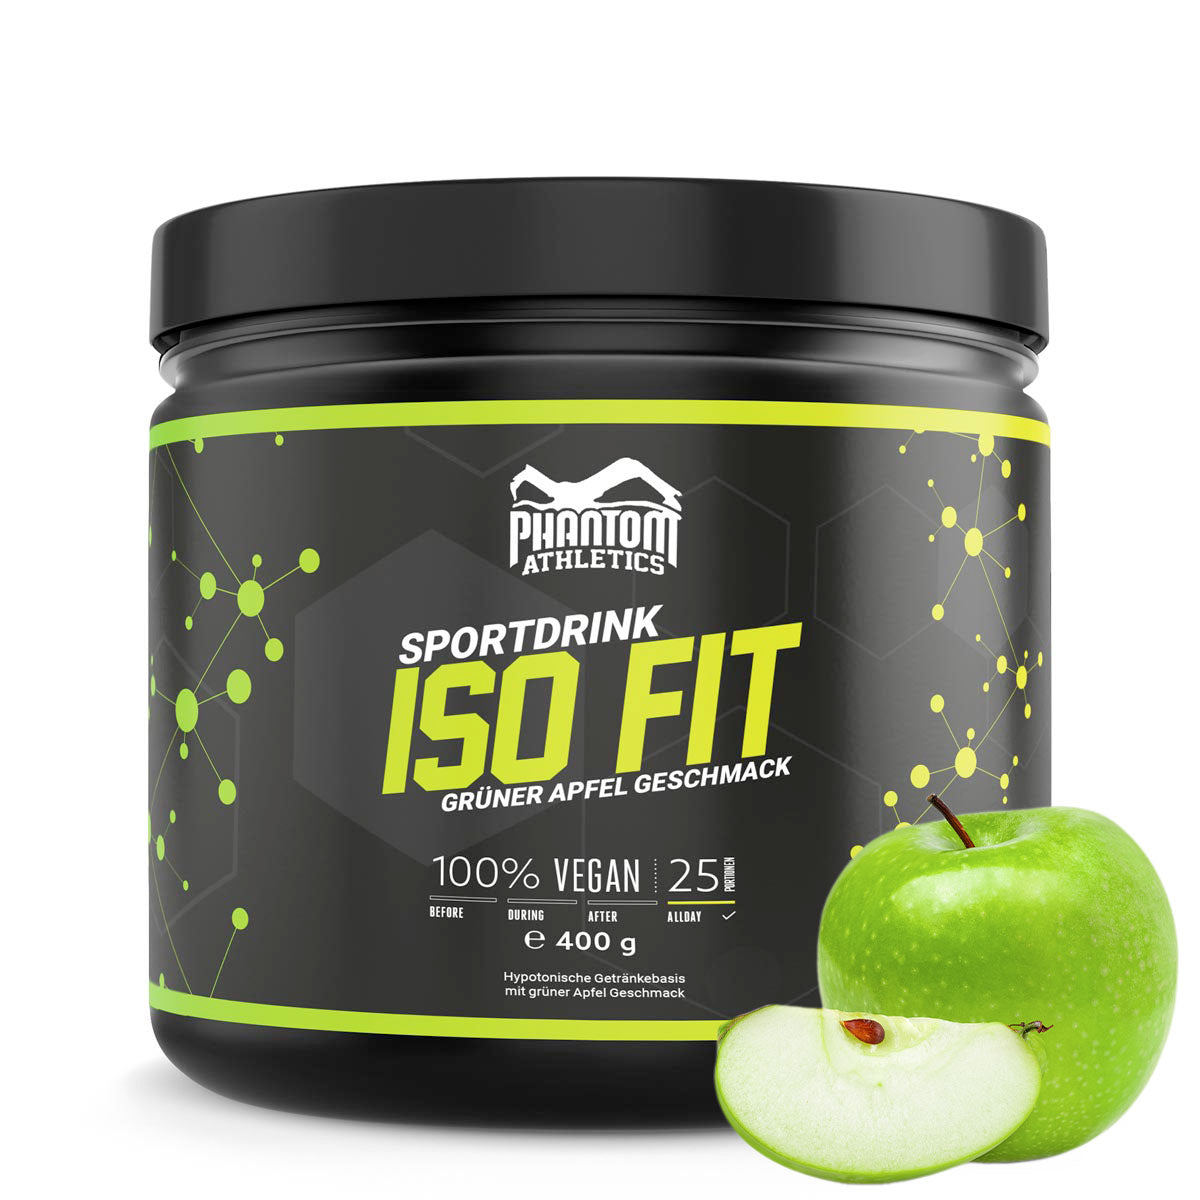 Das Phantom ISO FIT Nahrungsergänzungsmittel versorgt dich im Kampfsporttraining mit allem was du benötigst. Jetzt mit leckerem Grüner Apfel Geschmack.